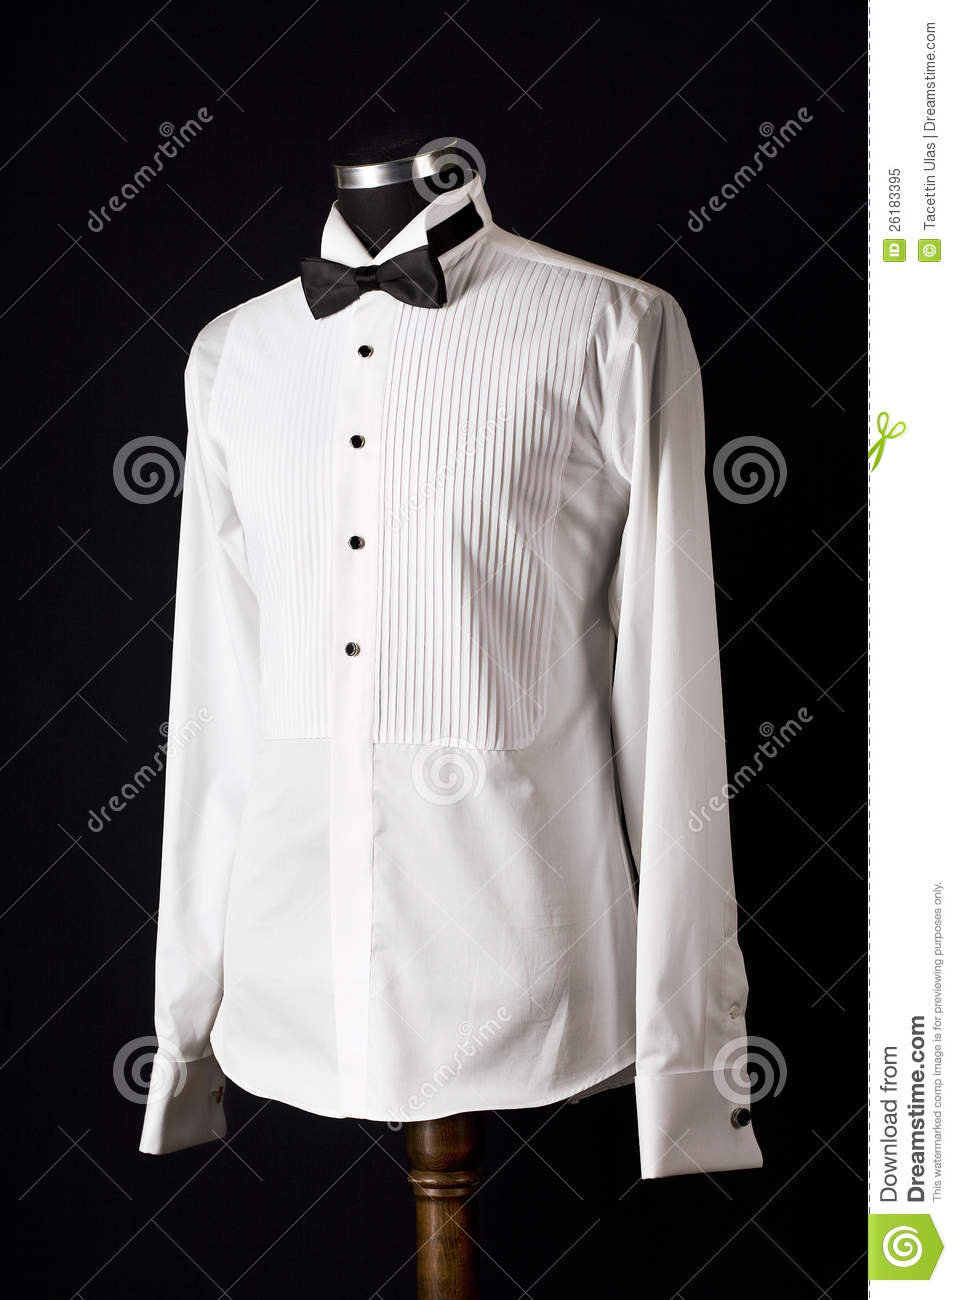 Tuxedo Shirt Royalty Free Stock Photo   Image  26183395